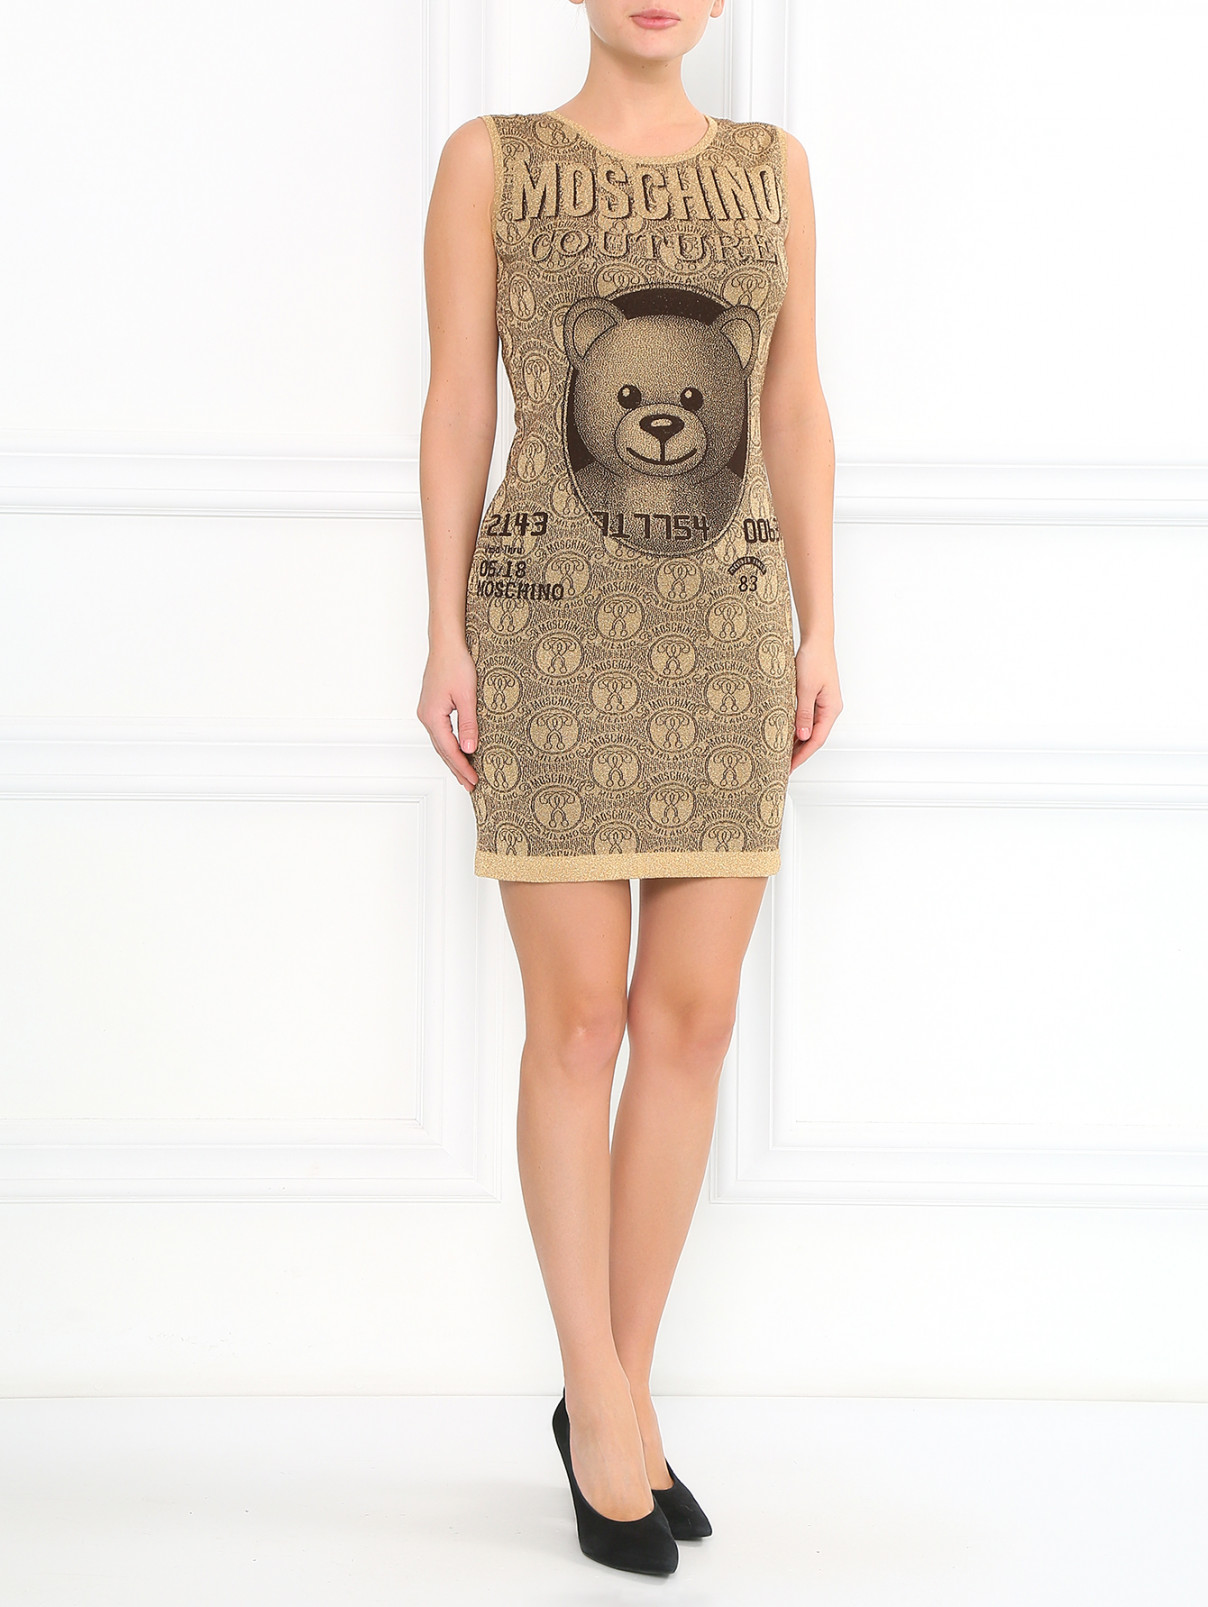 Трикотажное платье с узором Moschino Couture  –  Модель Общий вид  – Цвет:  Золотой